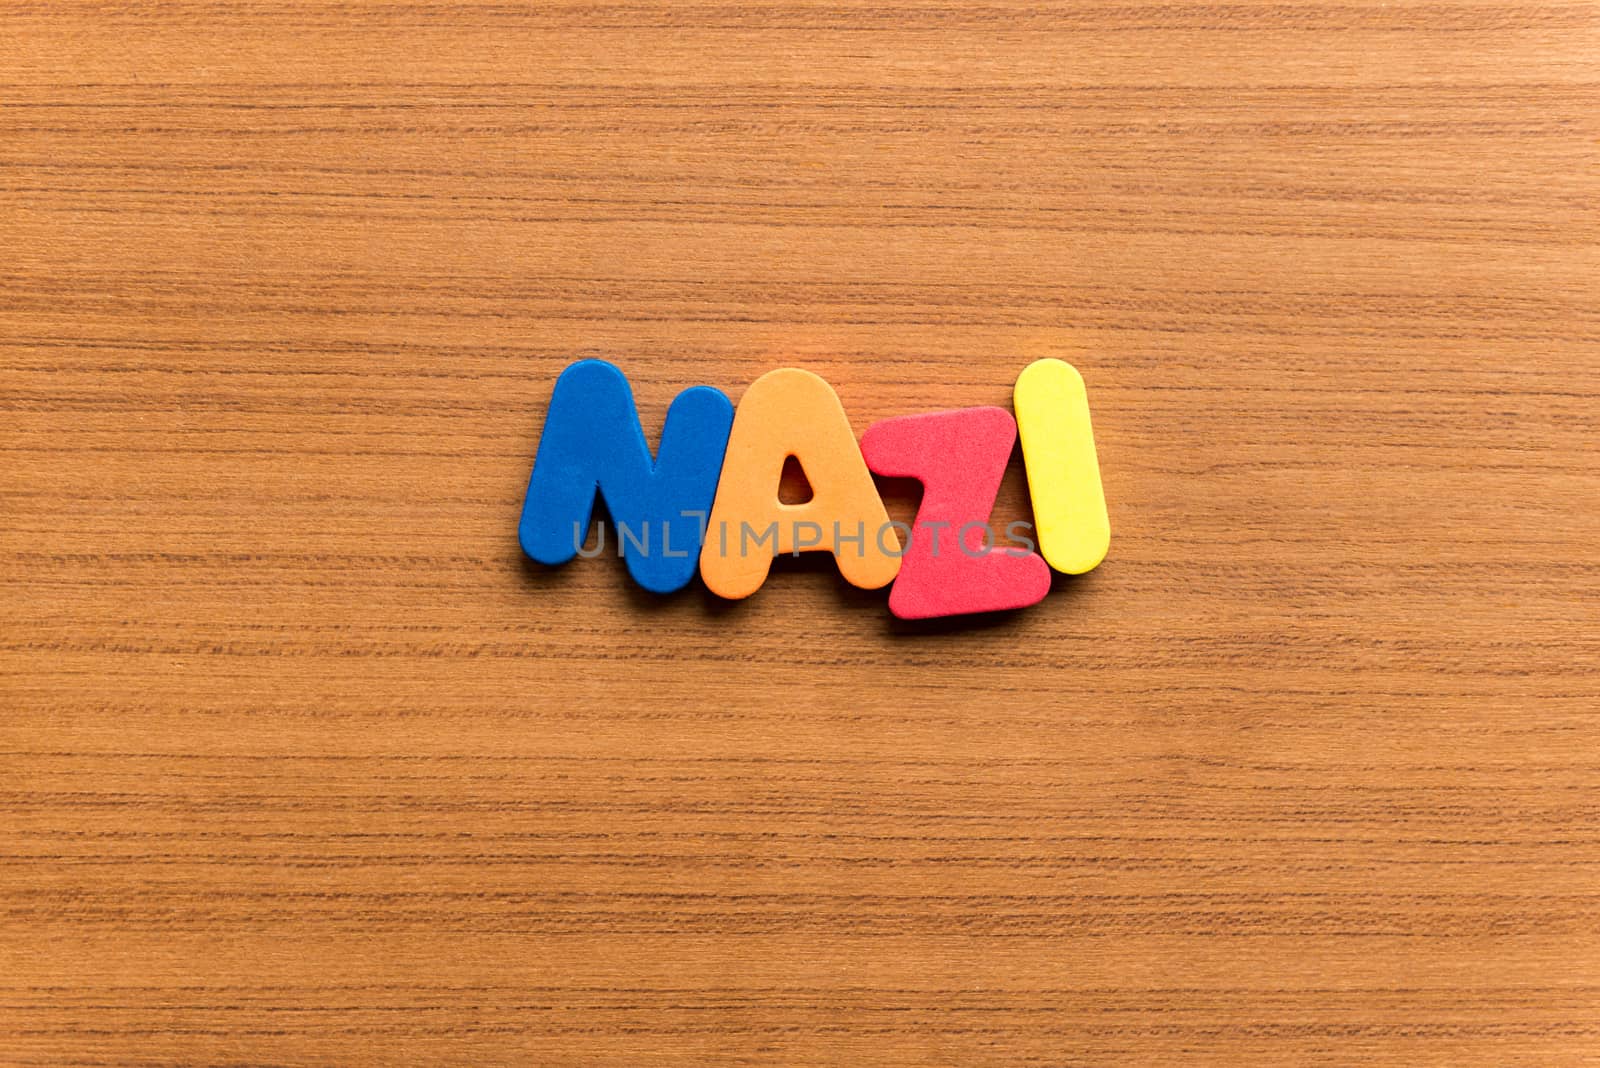 nazi colorful word by sohel.parvez@hotmail.com